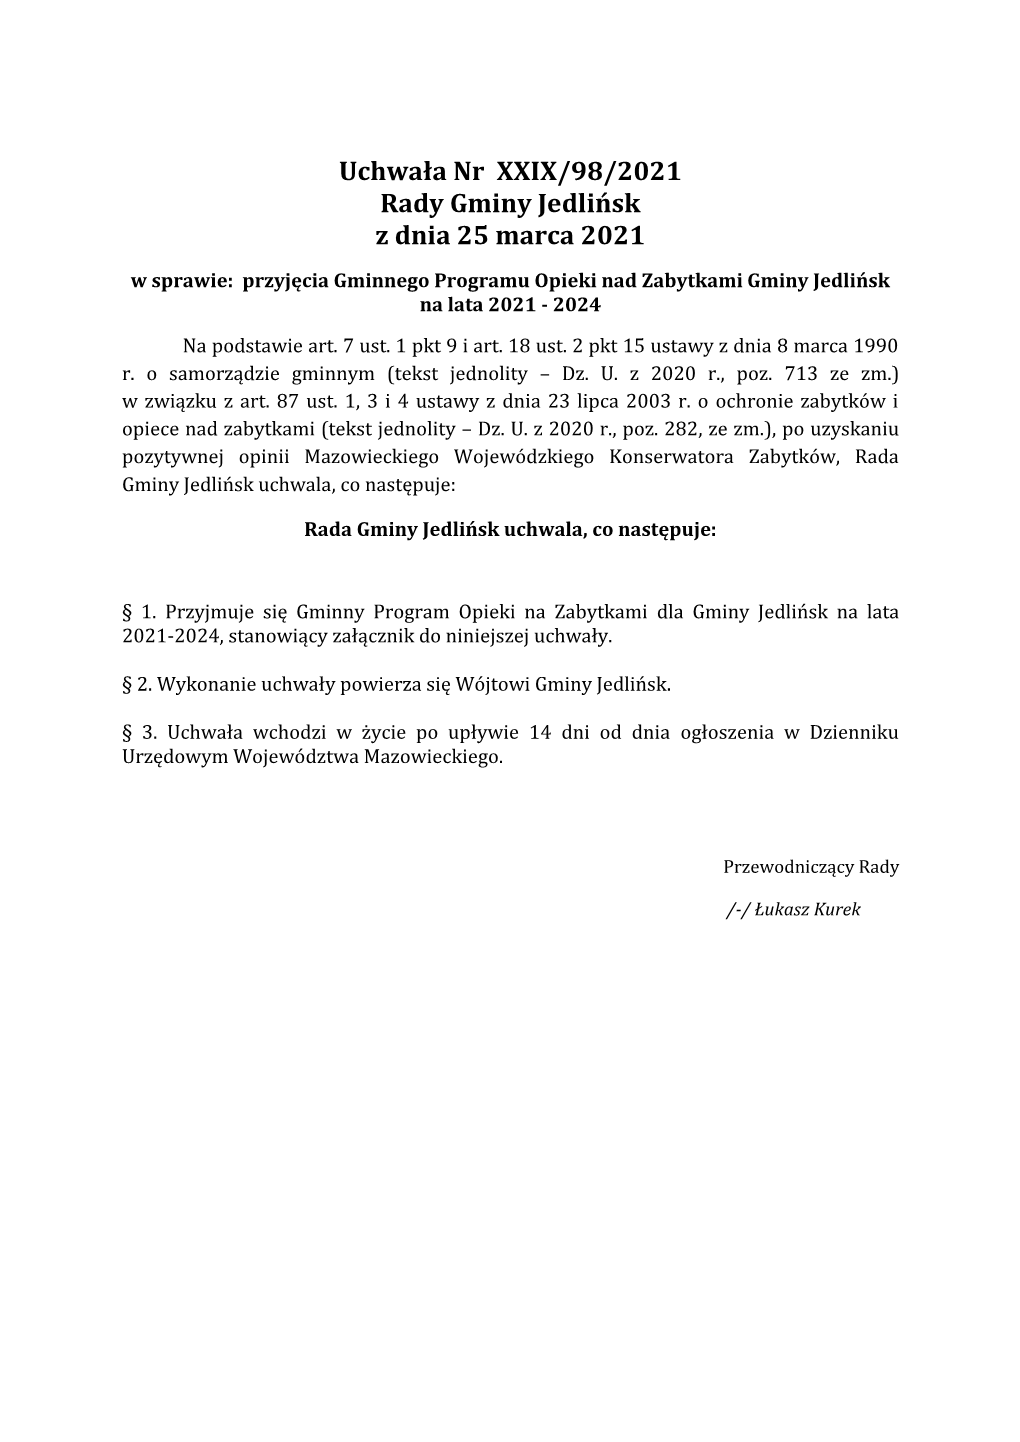 Uchwała Nr XXIX/98/2021 Rady Gminy Jedlińsk Z Dnia 25 Marca 2021